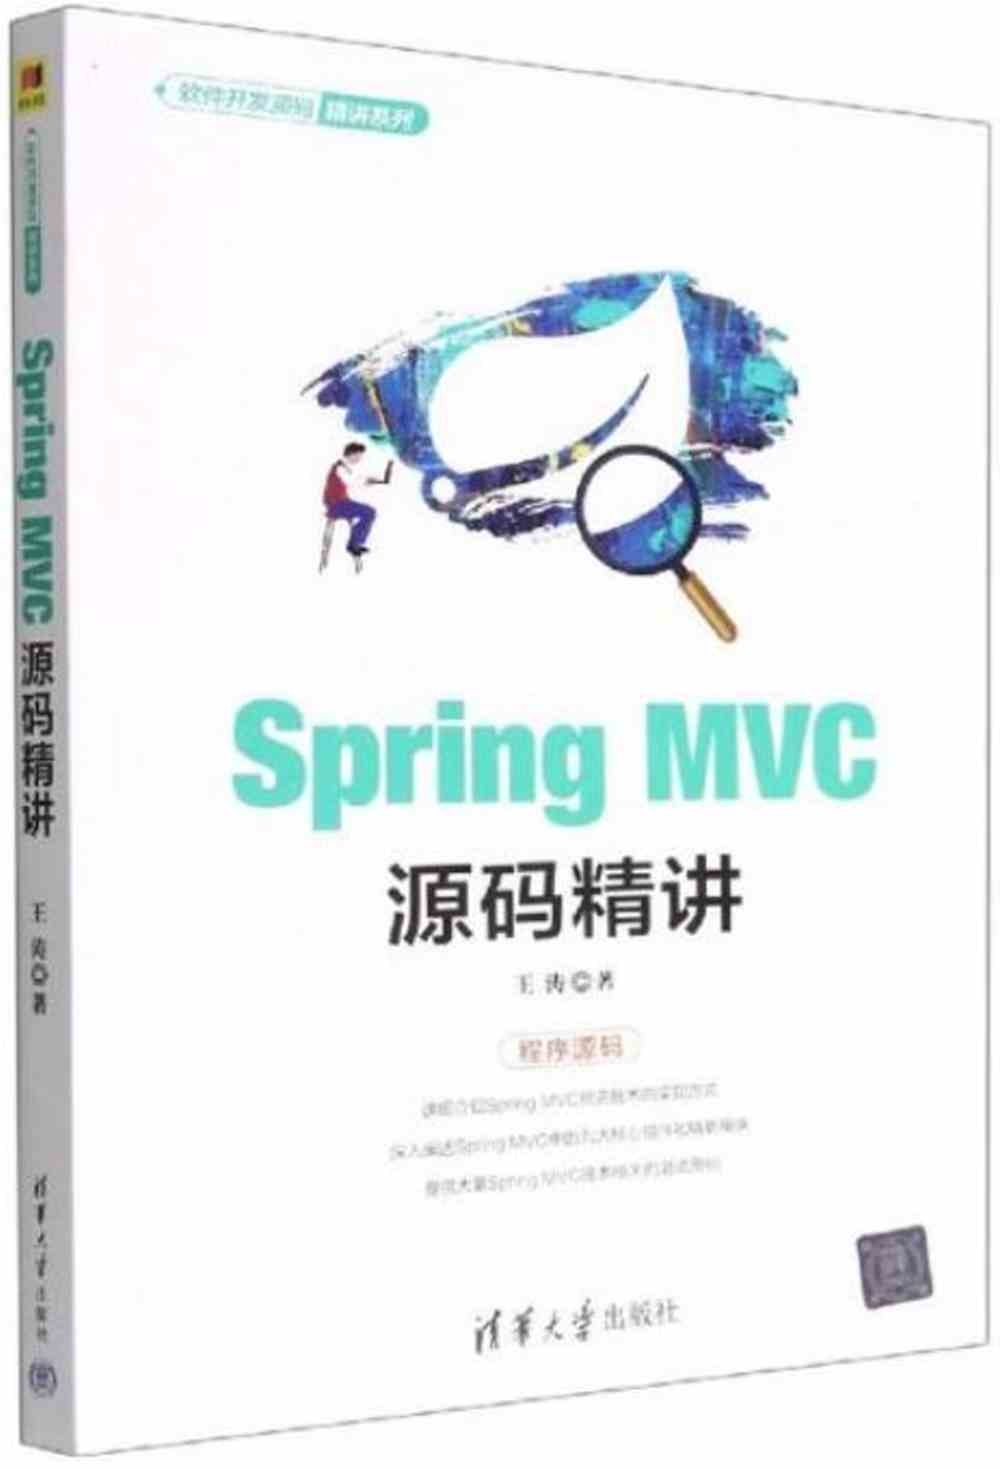 Spring MVC源碼精講